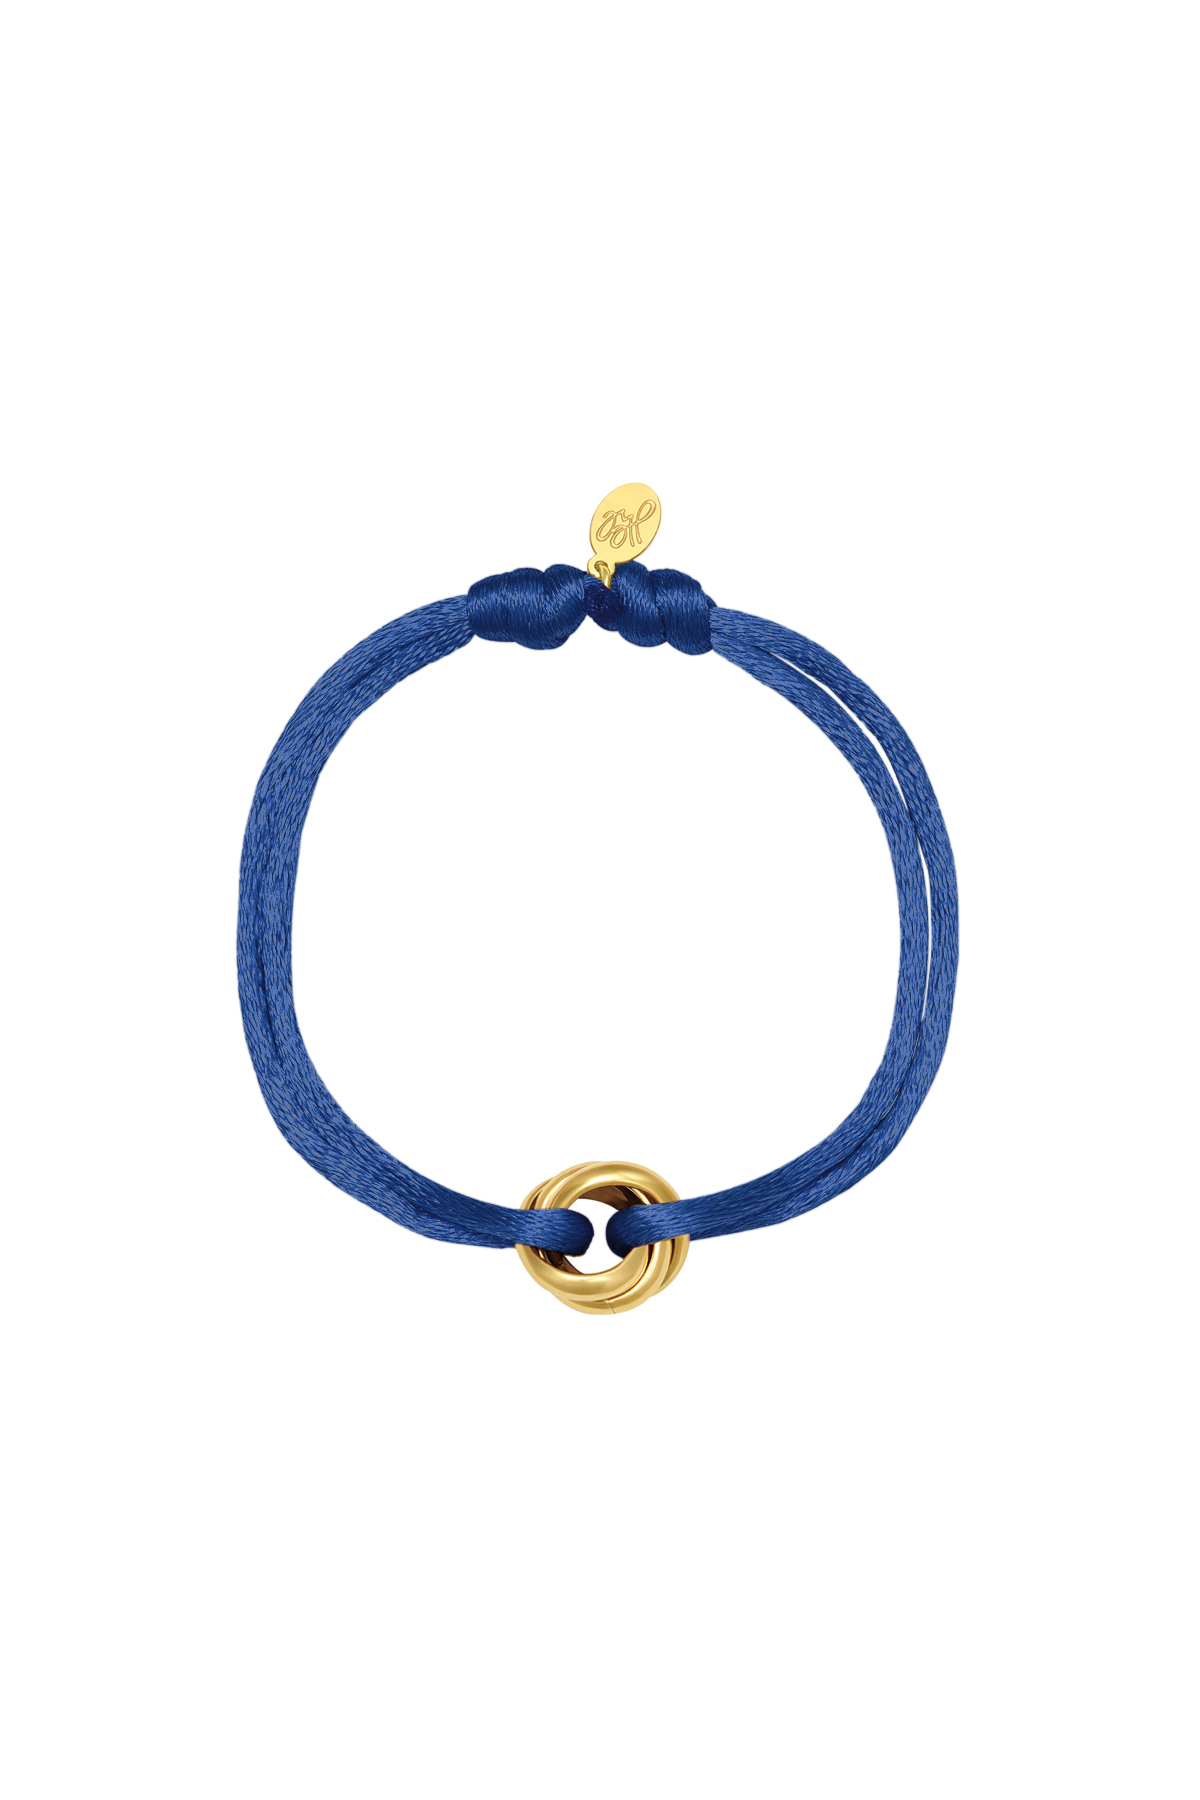 Kobalt / Armband Satin Knot blau Edelstahl Bild14